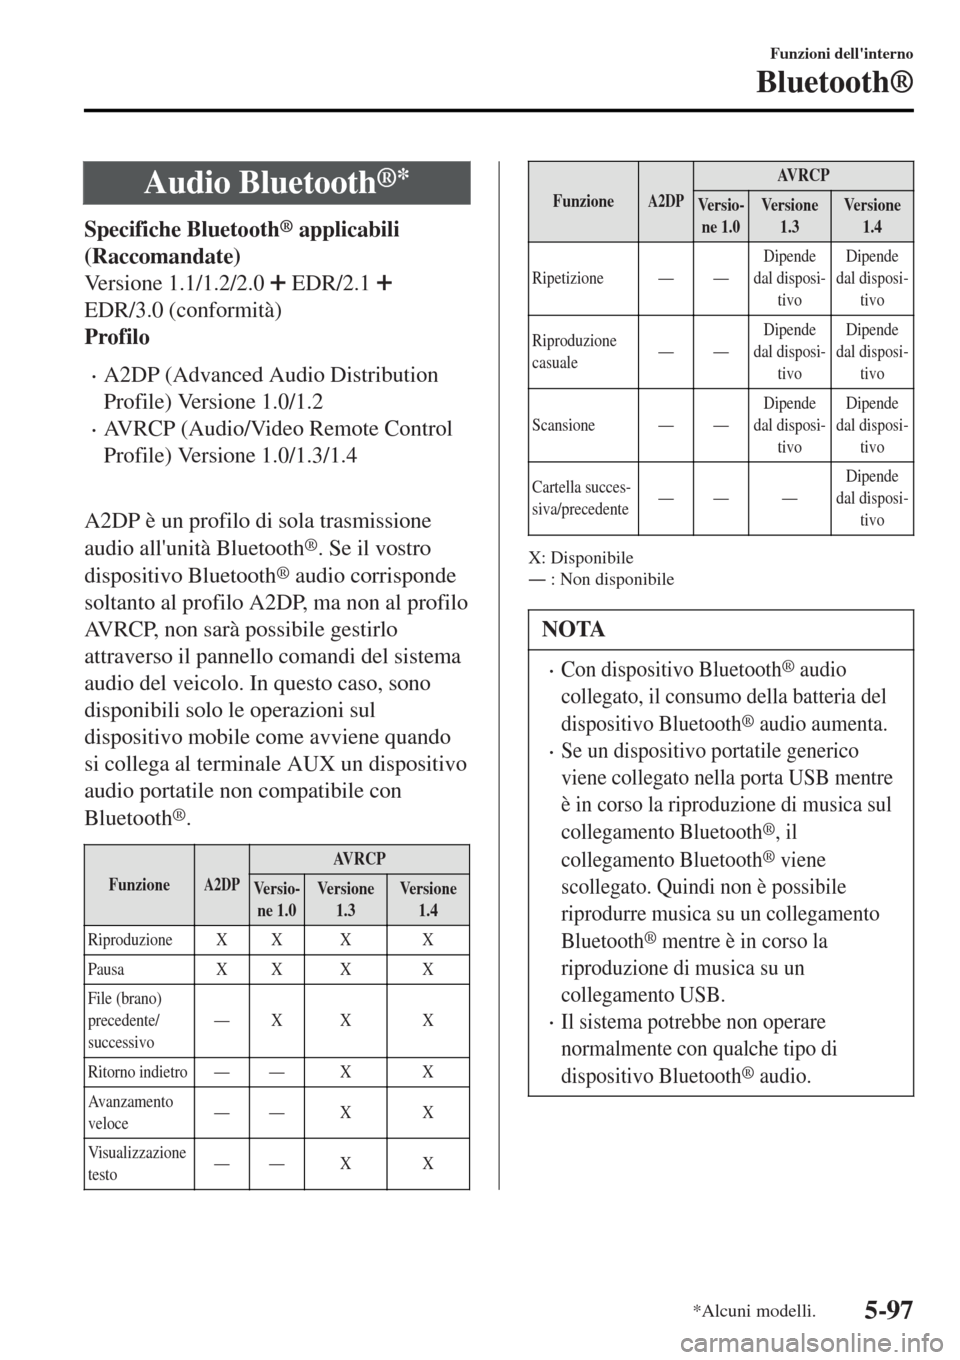 MAZDA MODEL MX-5 2015  Manuale del proprietario (in Italian) Audio Bluetooth®*
Specifiche Bluetooth® applicabili
(Raccomandate)
Versione 1.1/1.2/2.0 
 EDR/2.1 
EDR/3.0 (conformità)
Profilo
•A2DP (Advanced Audio Distribution
Profile) Versione 1.0/1.2
•AVR